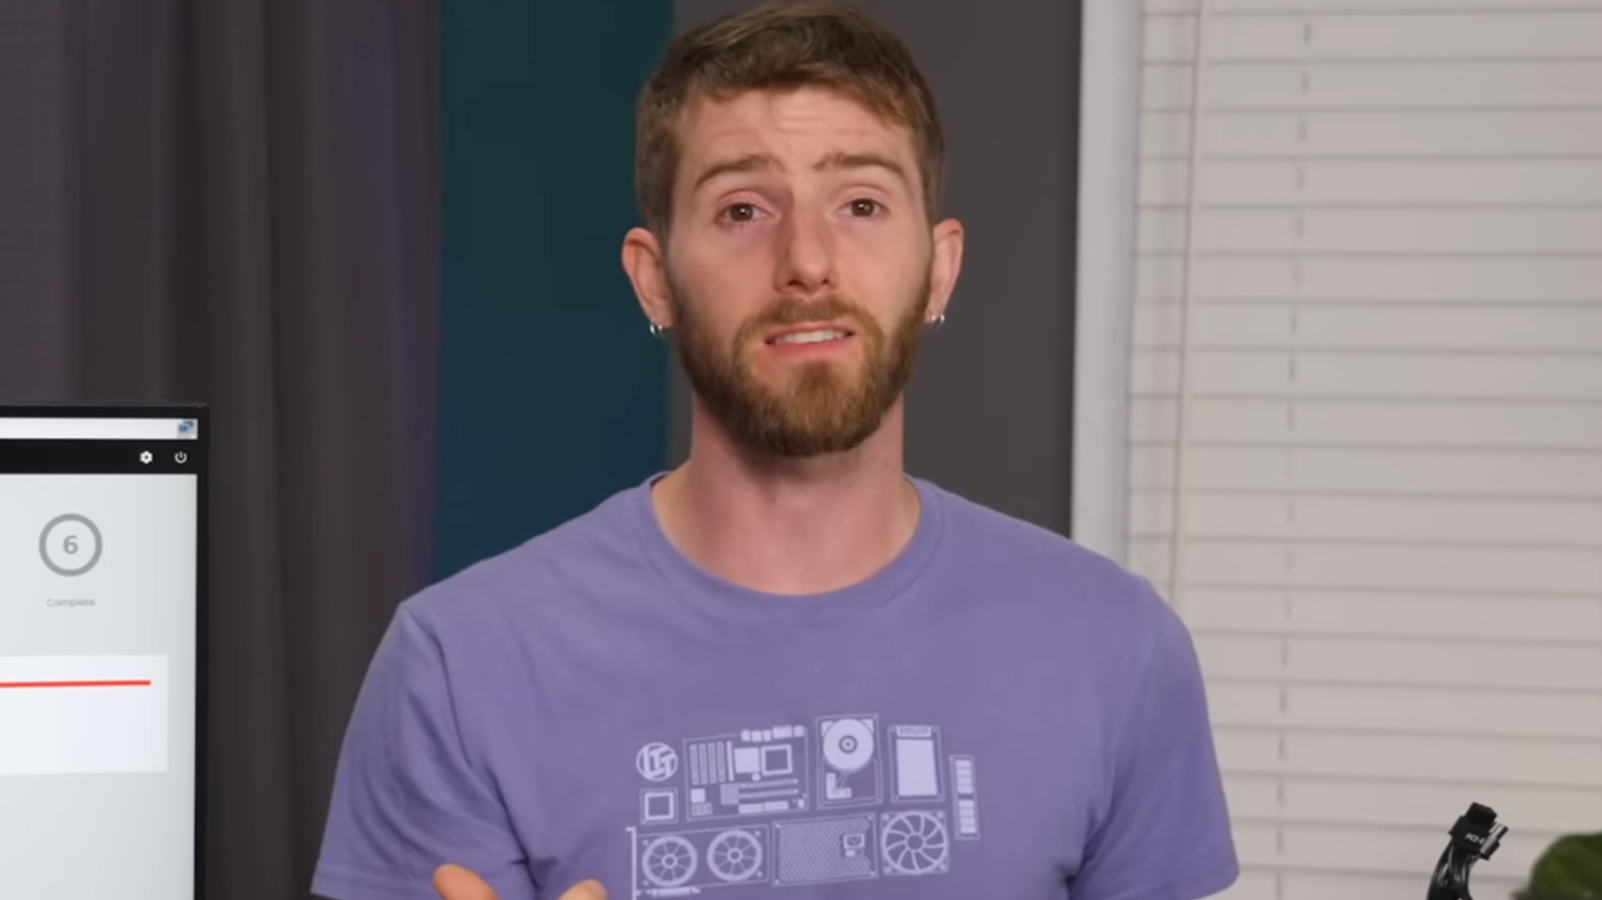 يعترف Linus بـ “الكسل” في رد Gamer’s Nexus ، لكنه ينتقد الانتقادات العامة